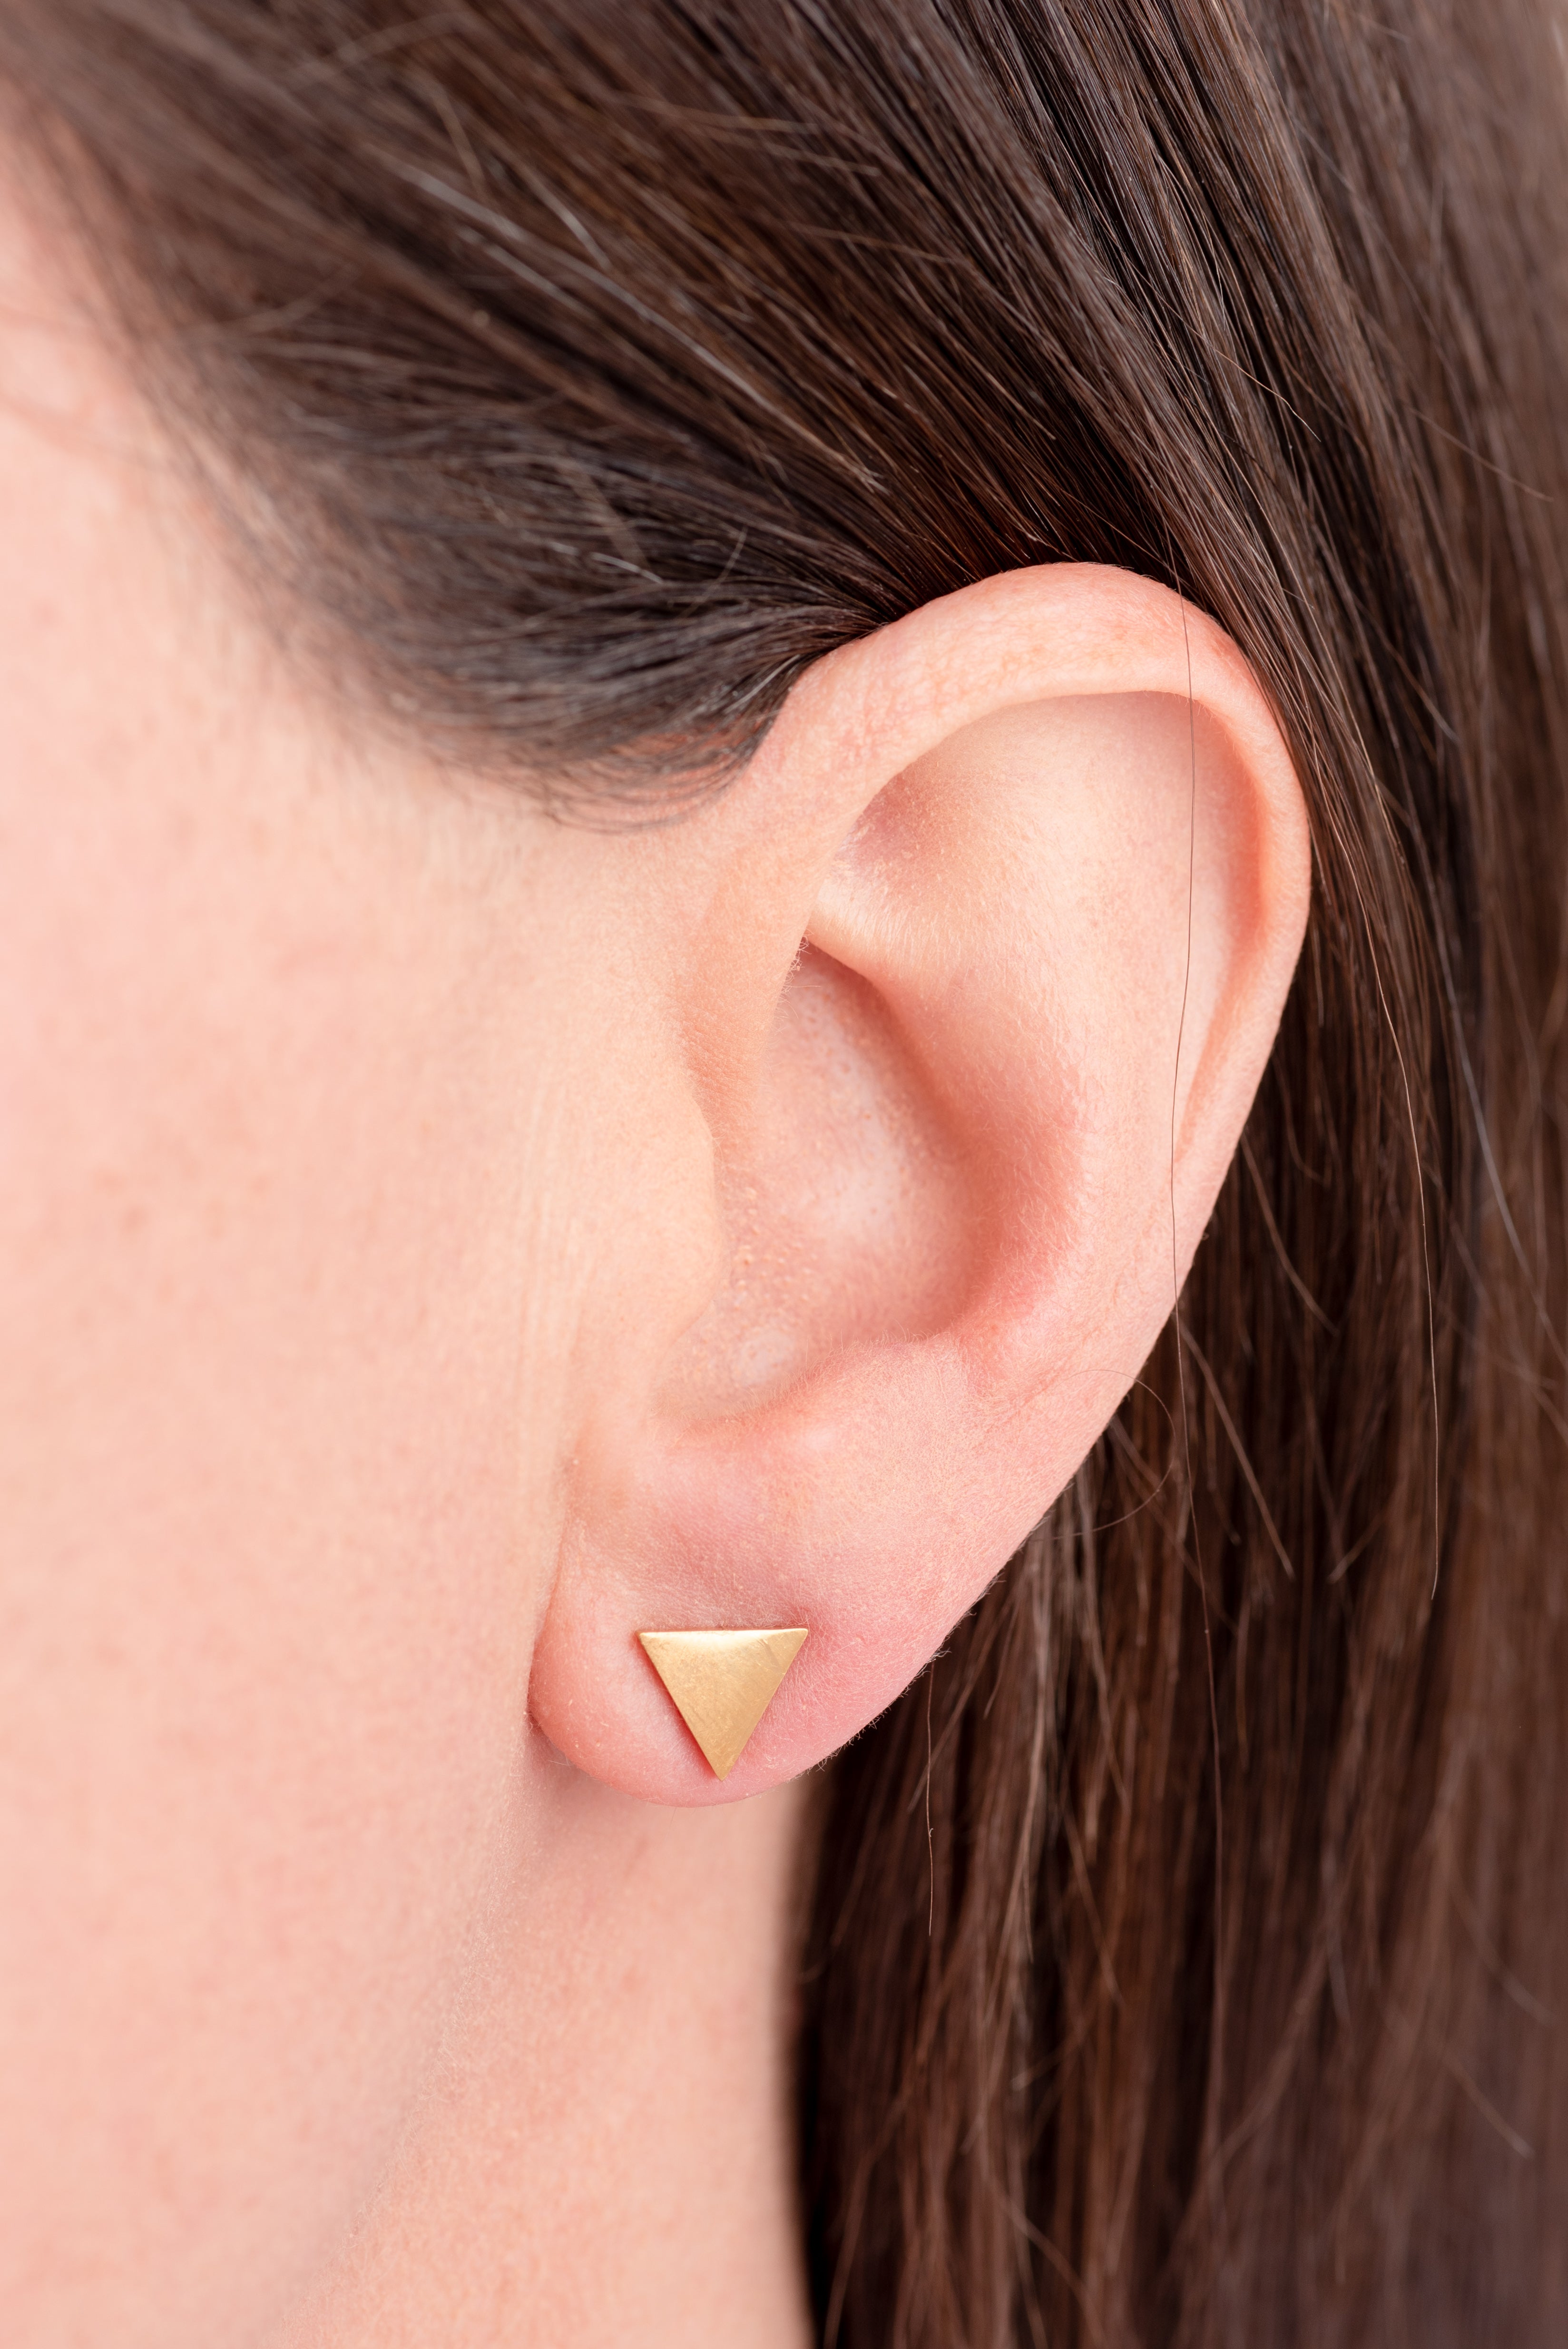 Type 3 Power Points Earrings